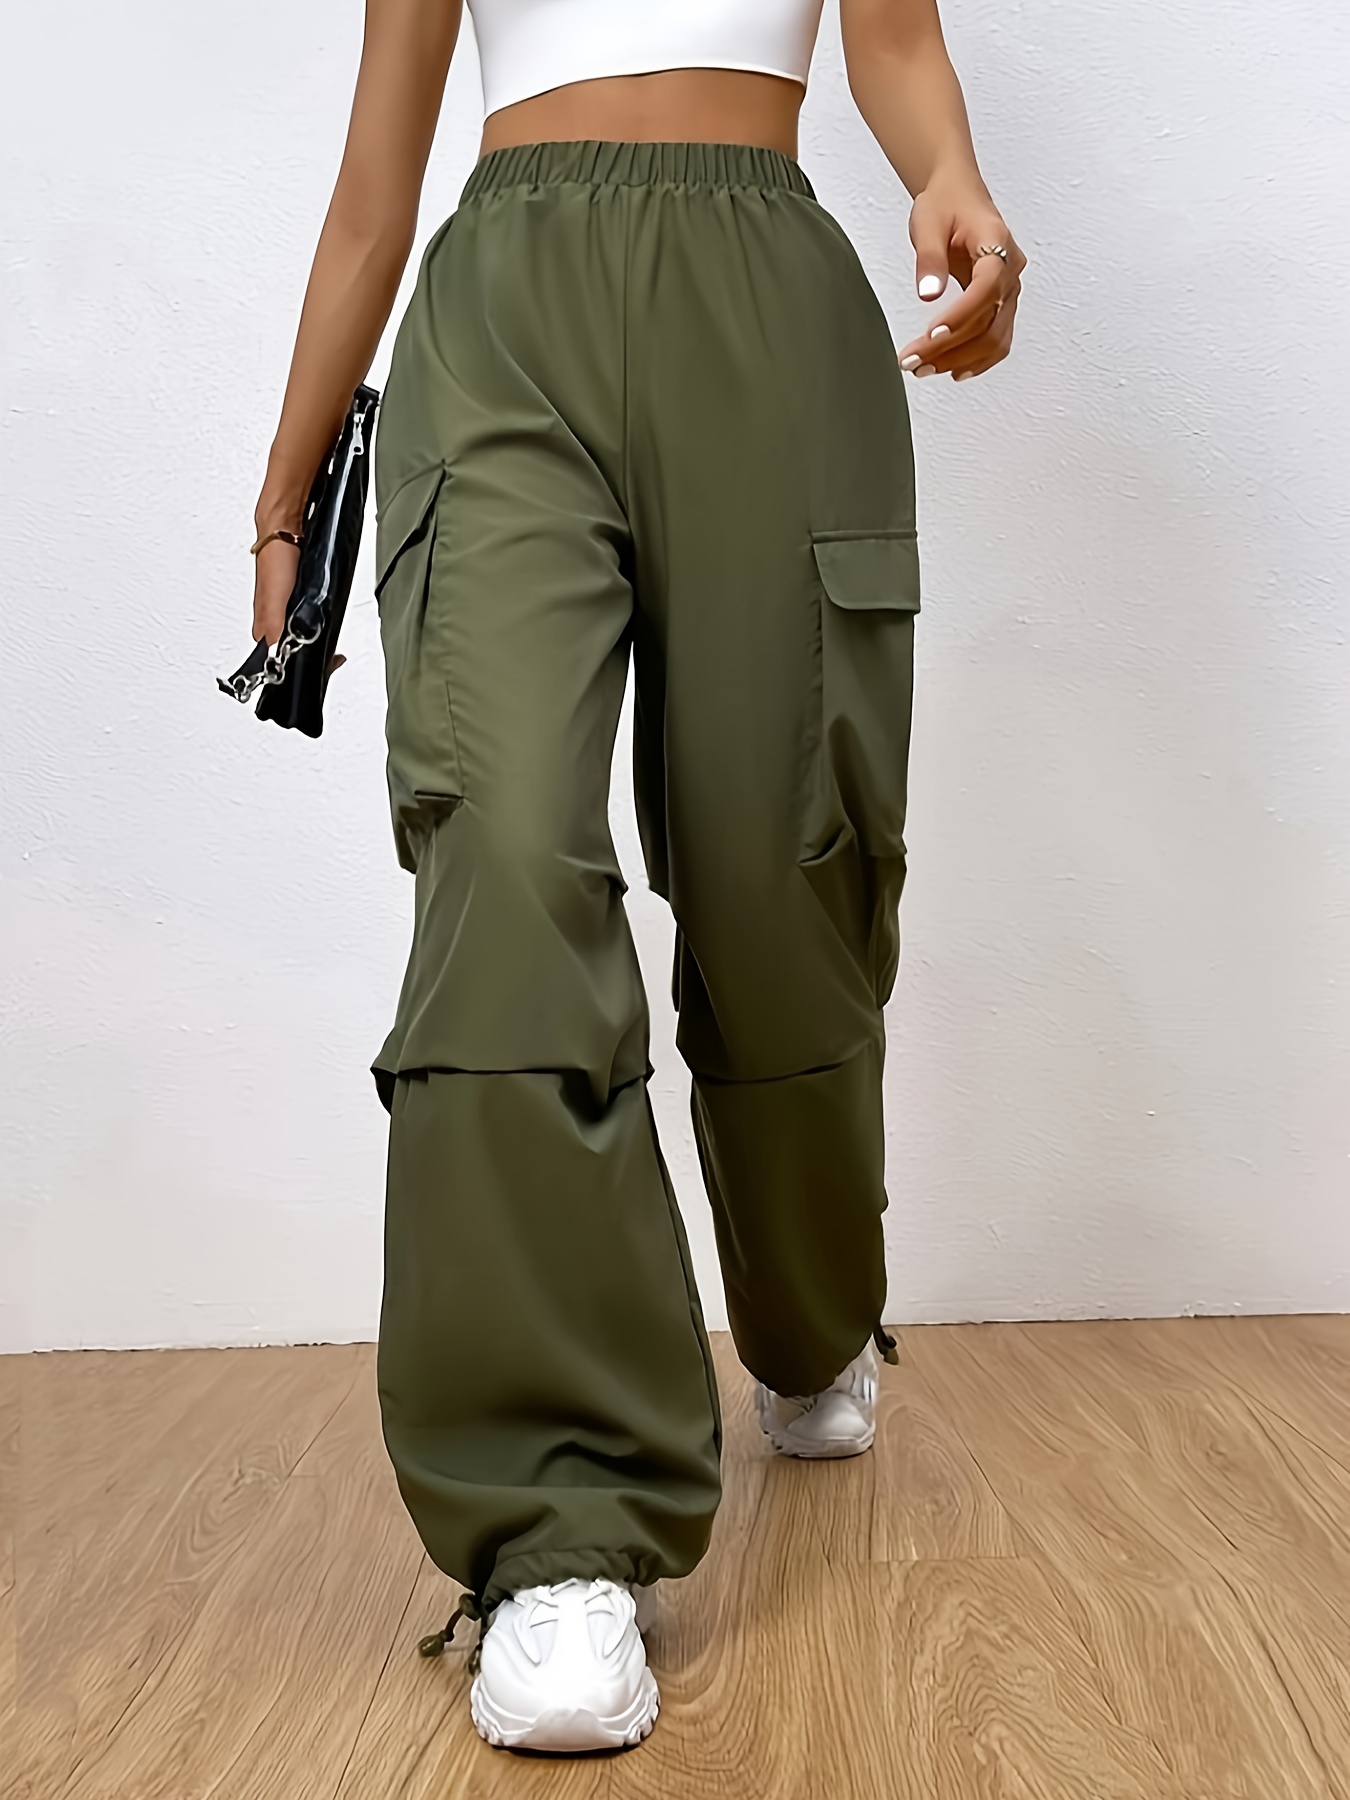  Women's Pocket Cargo Pants Women's Trendy Elastic